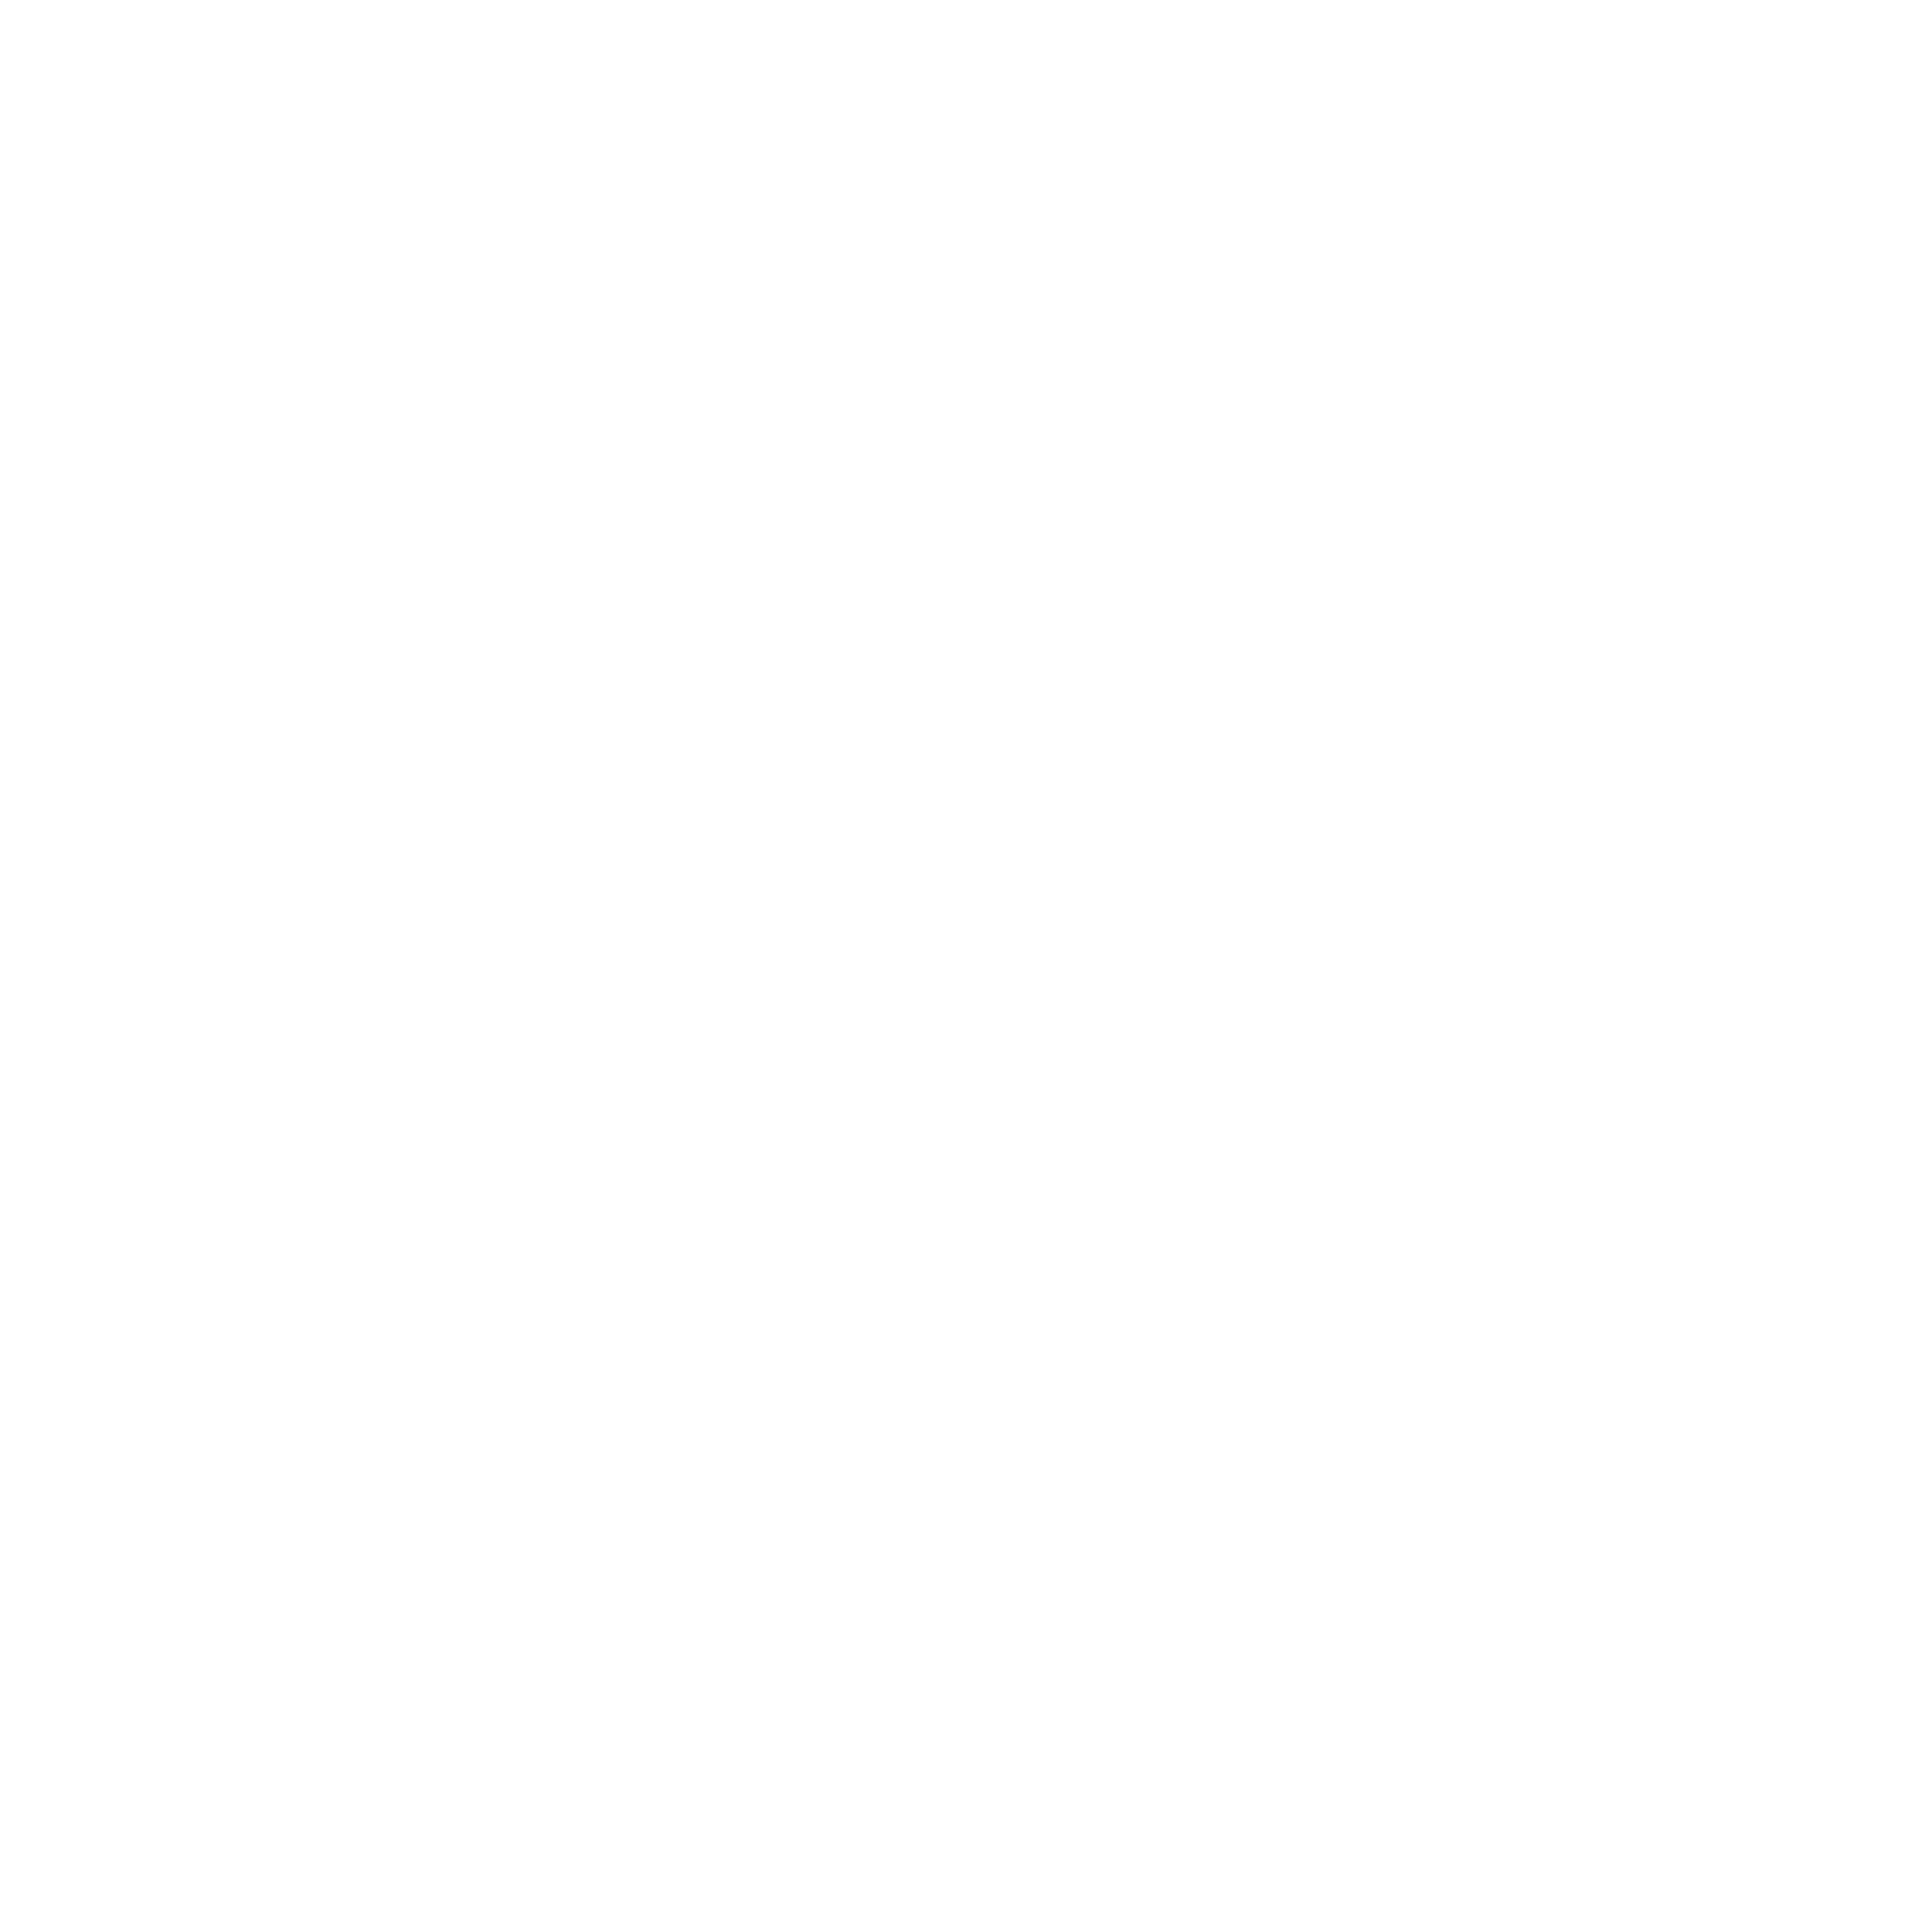 patrocinadores CL24-05-liga-bbva-expension-mx